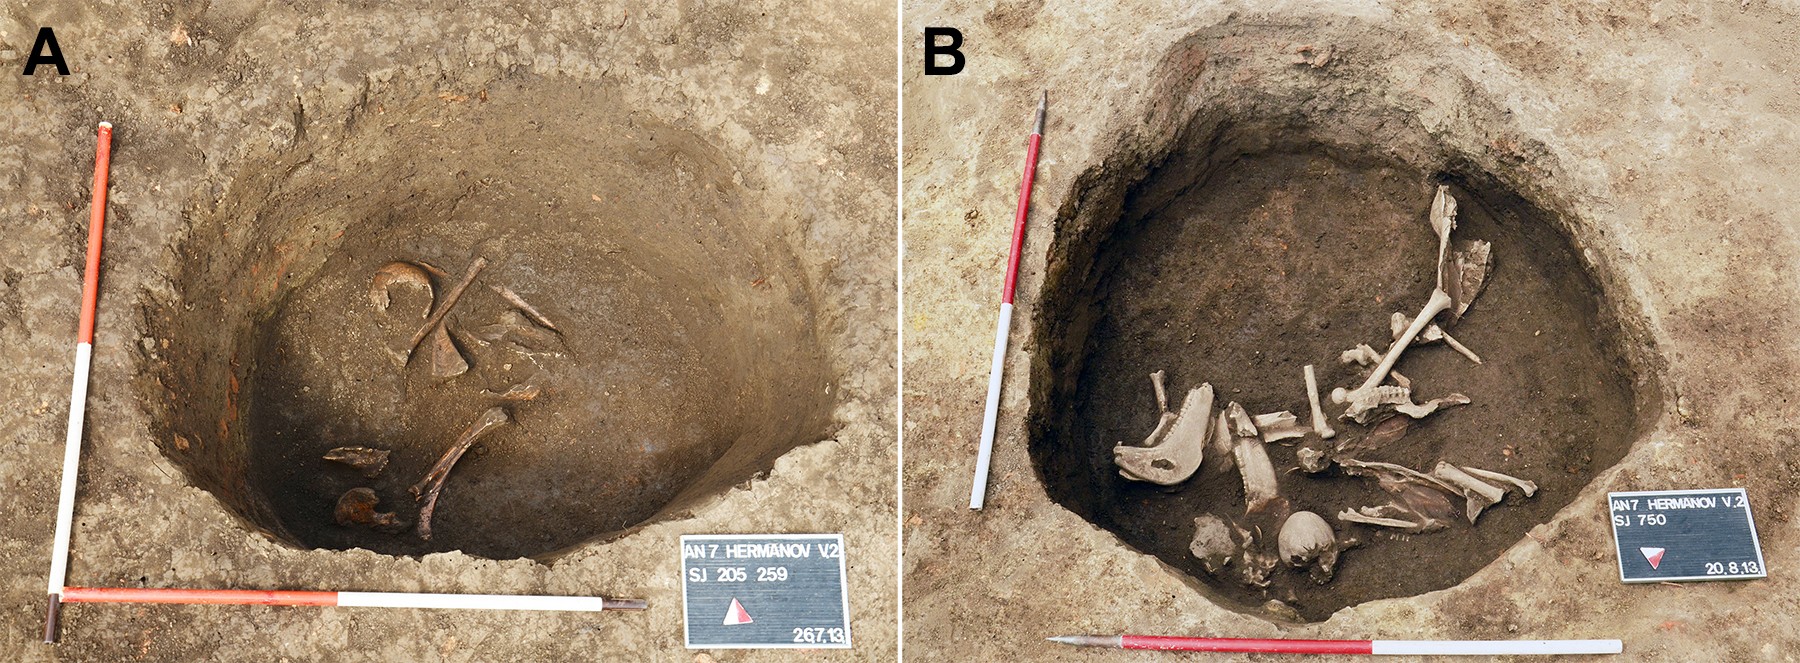 Também foram encontrados restos mortais de animais e cerâmica no sítio arqueológico (Foto: M Kavka/PLOS ONE)